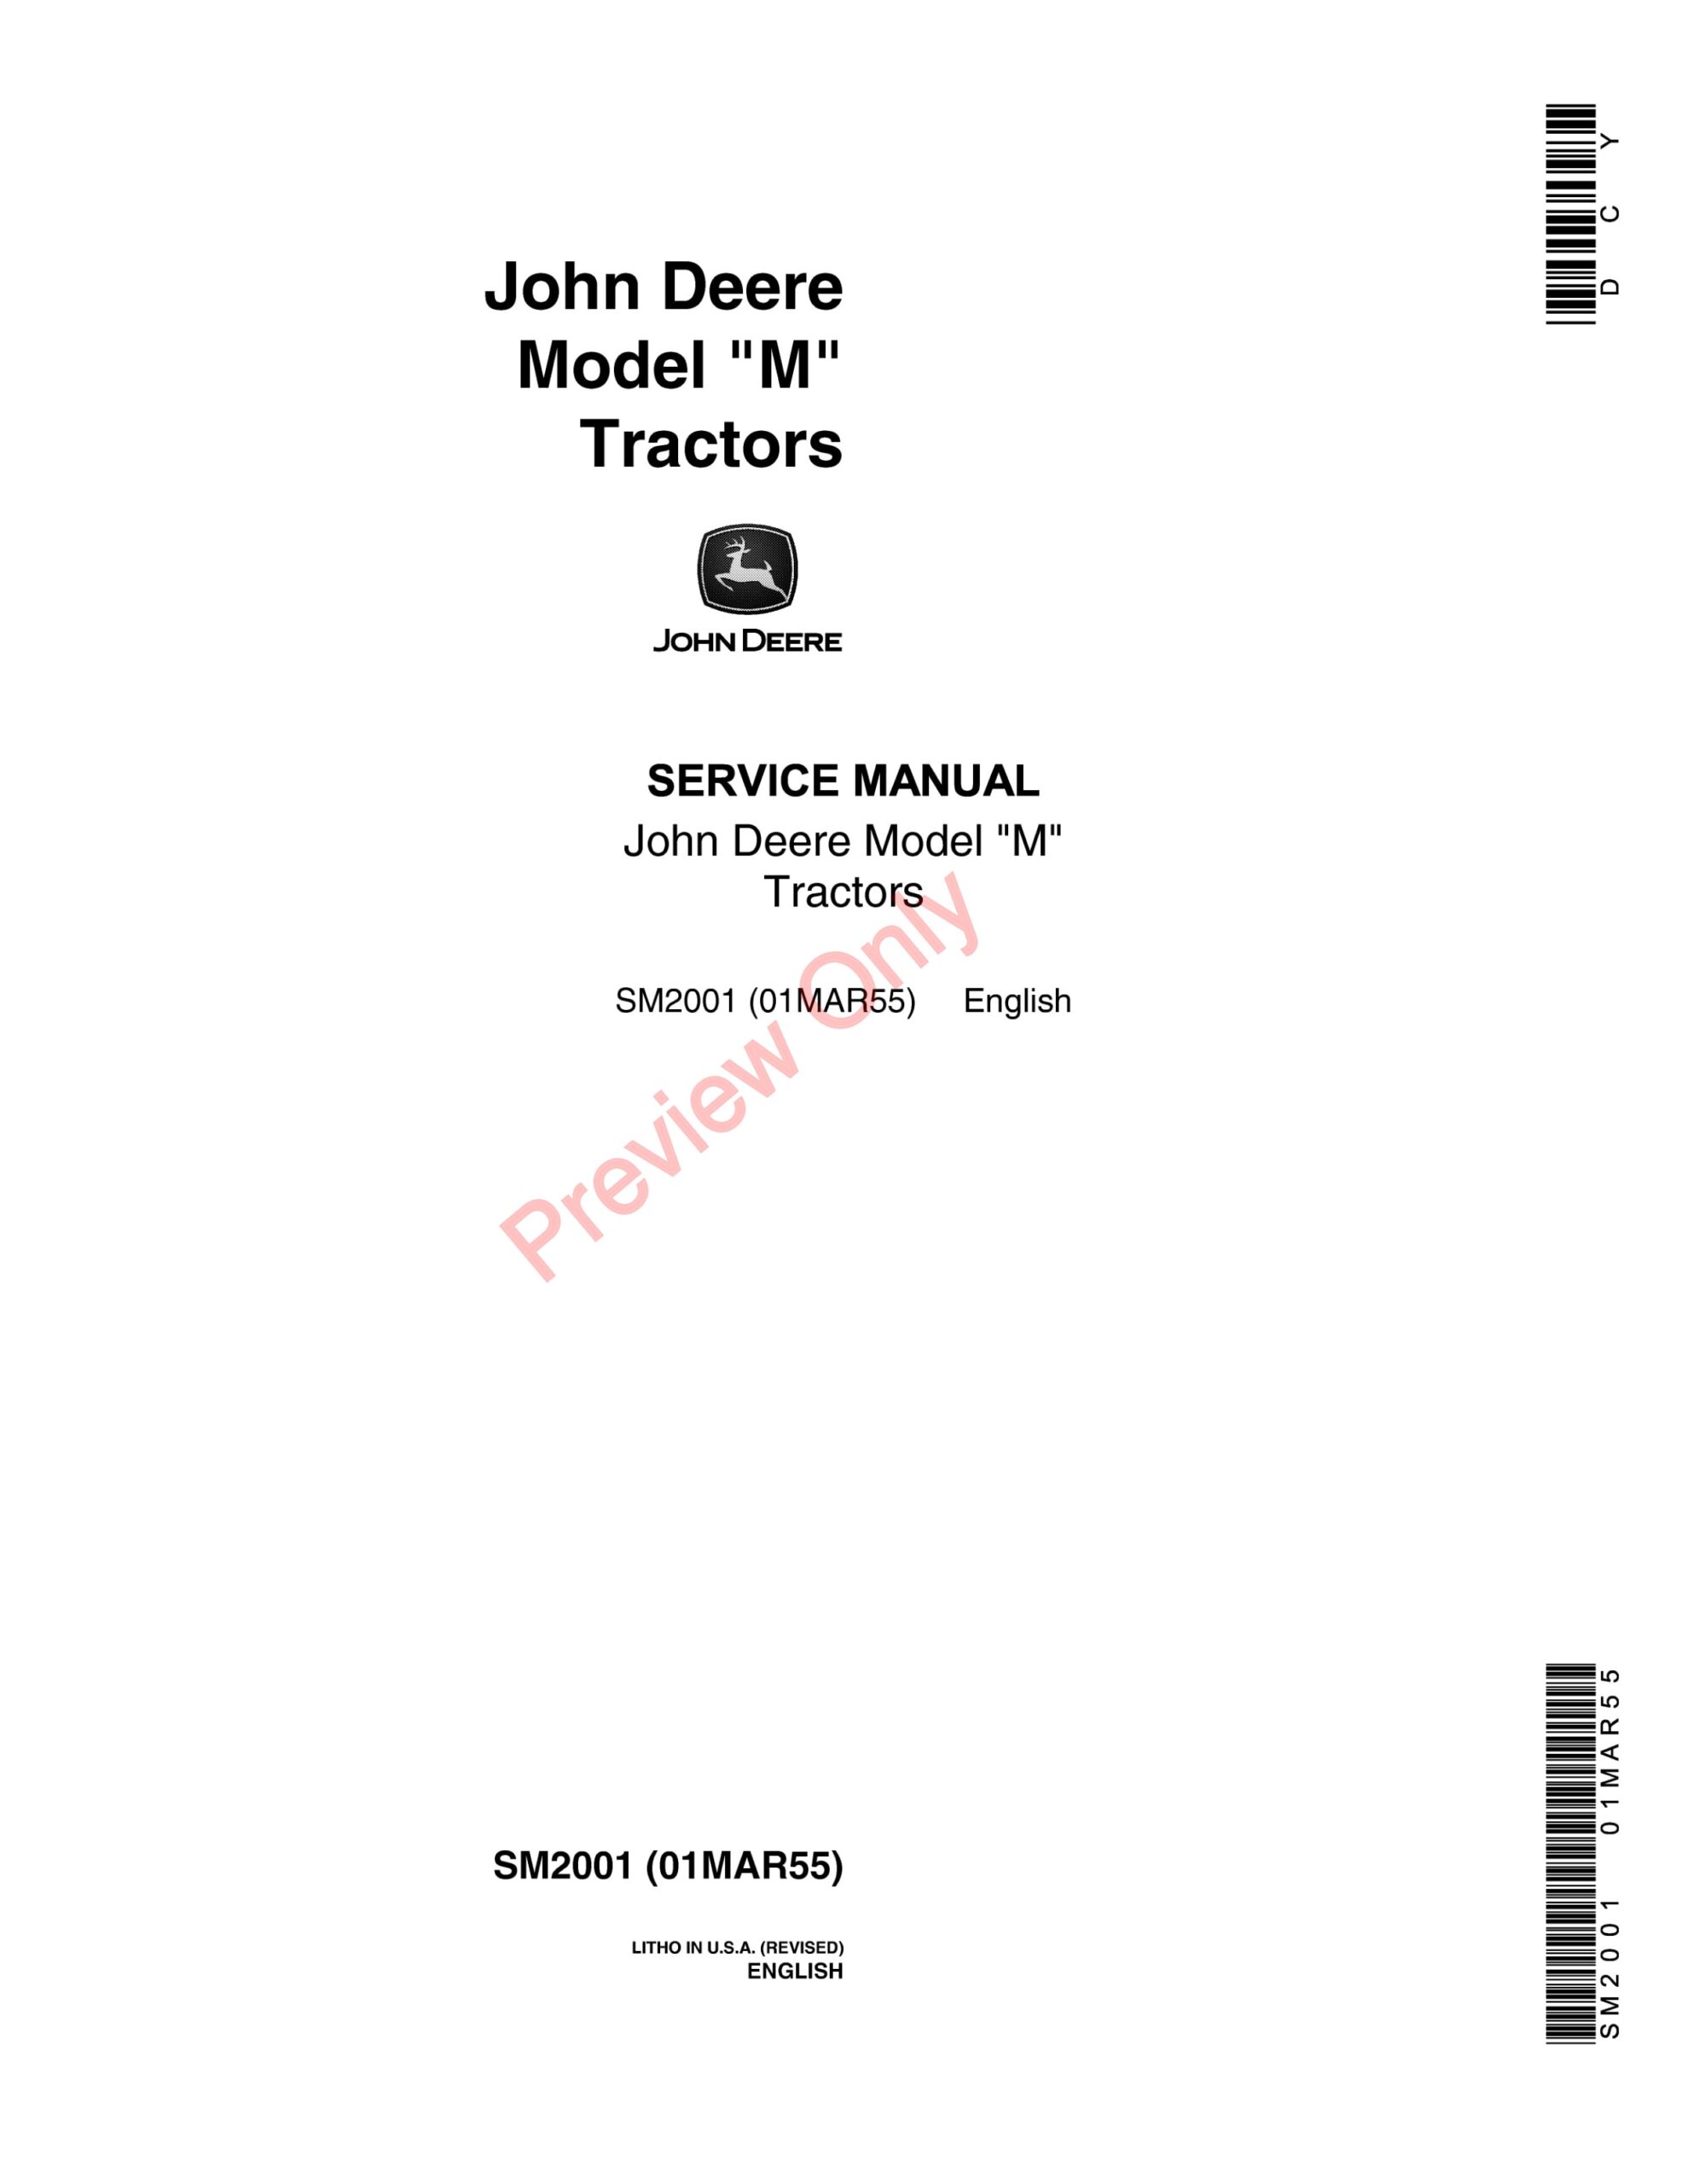 John Deere Model M Tractors Service Manual SM2001 19-1